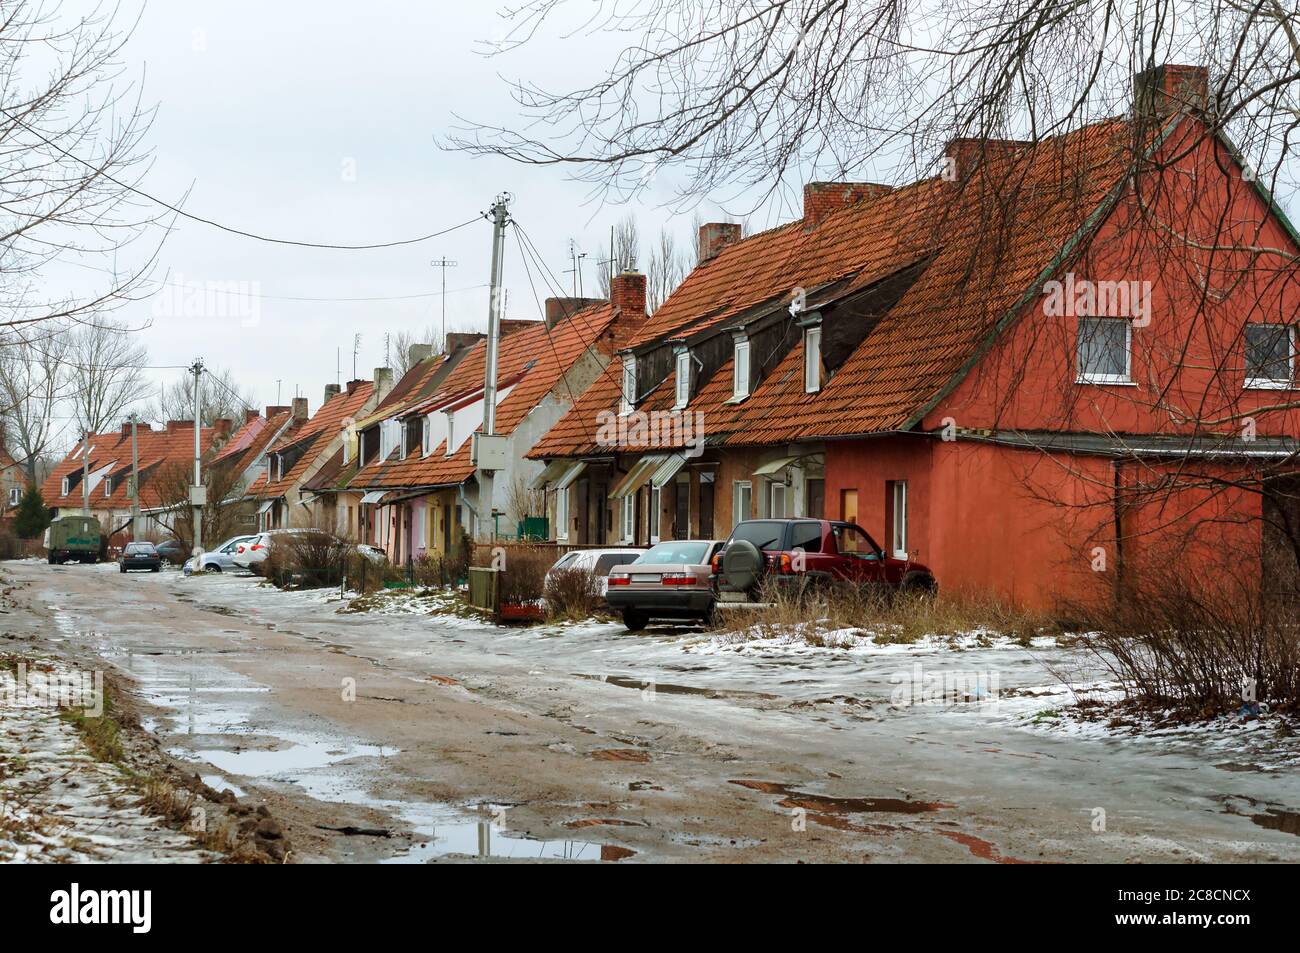 Vecchie case a un piano, strada sporca senza strada, Baltiysk, regione di Kaliningrad, Russia, 3 febbraio 2019 Foto Stock